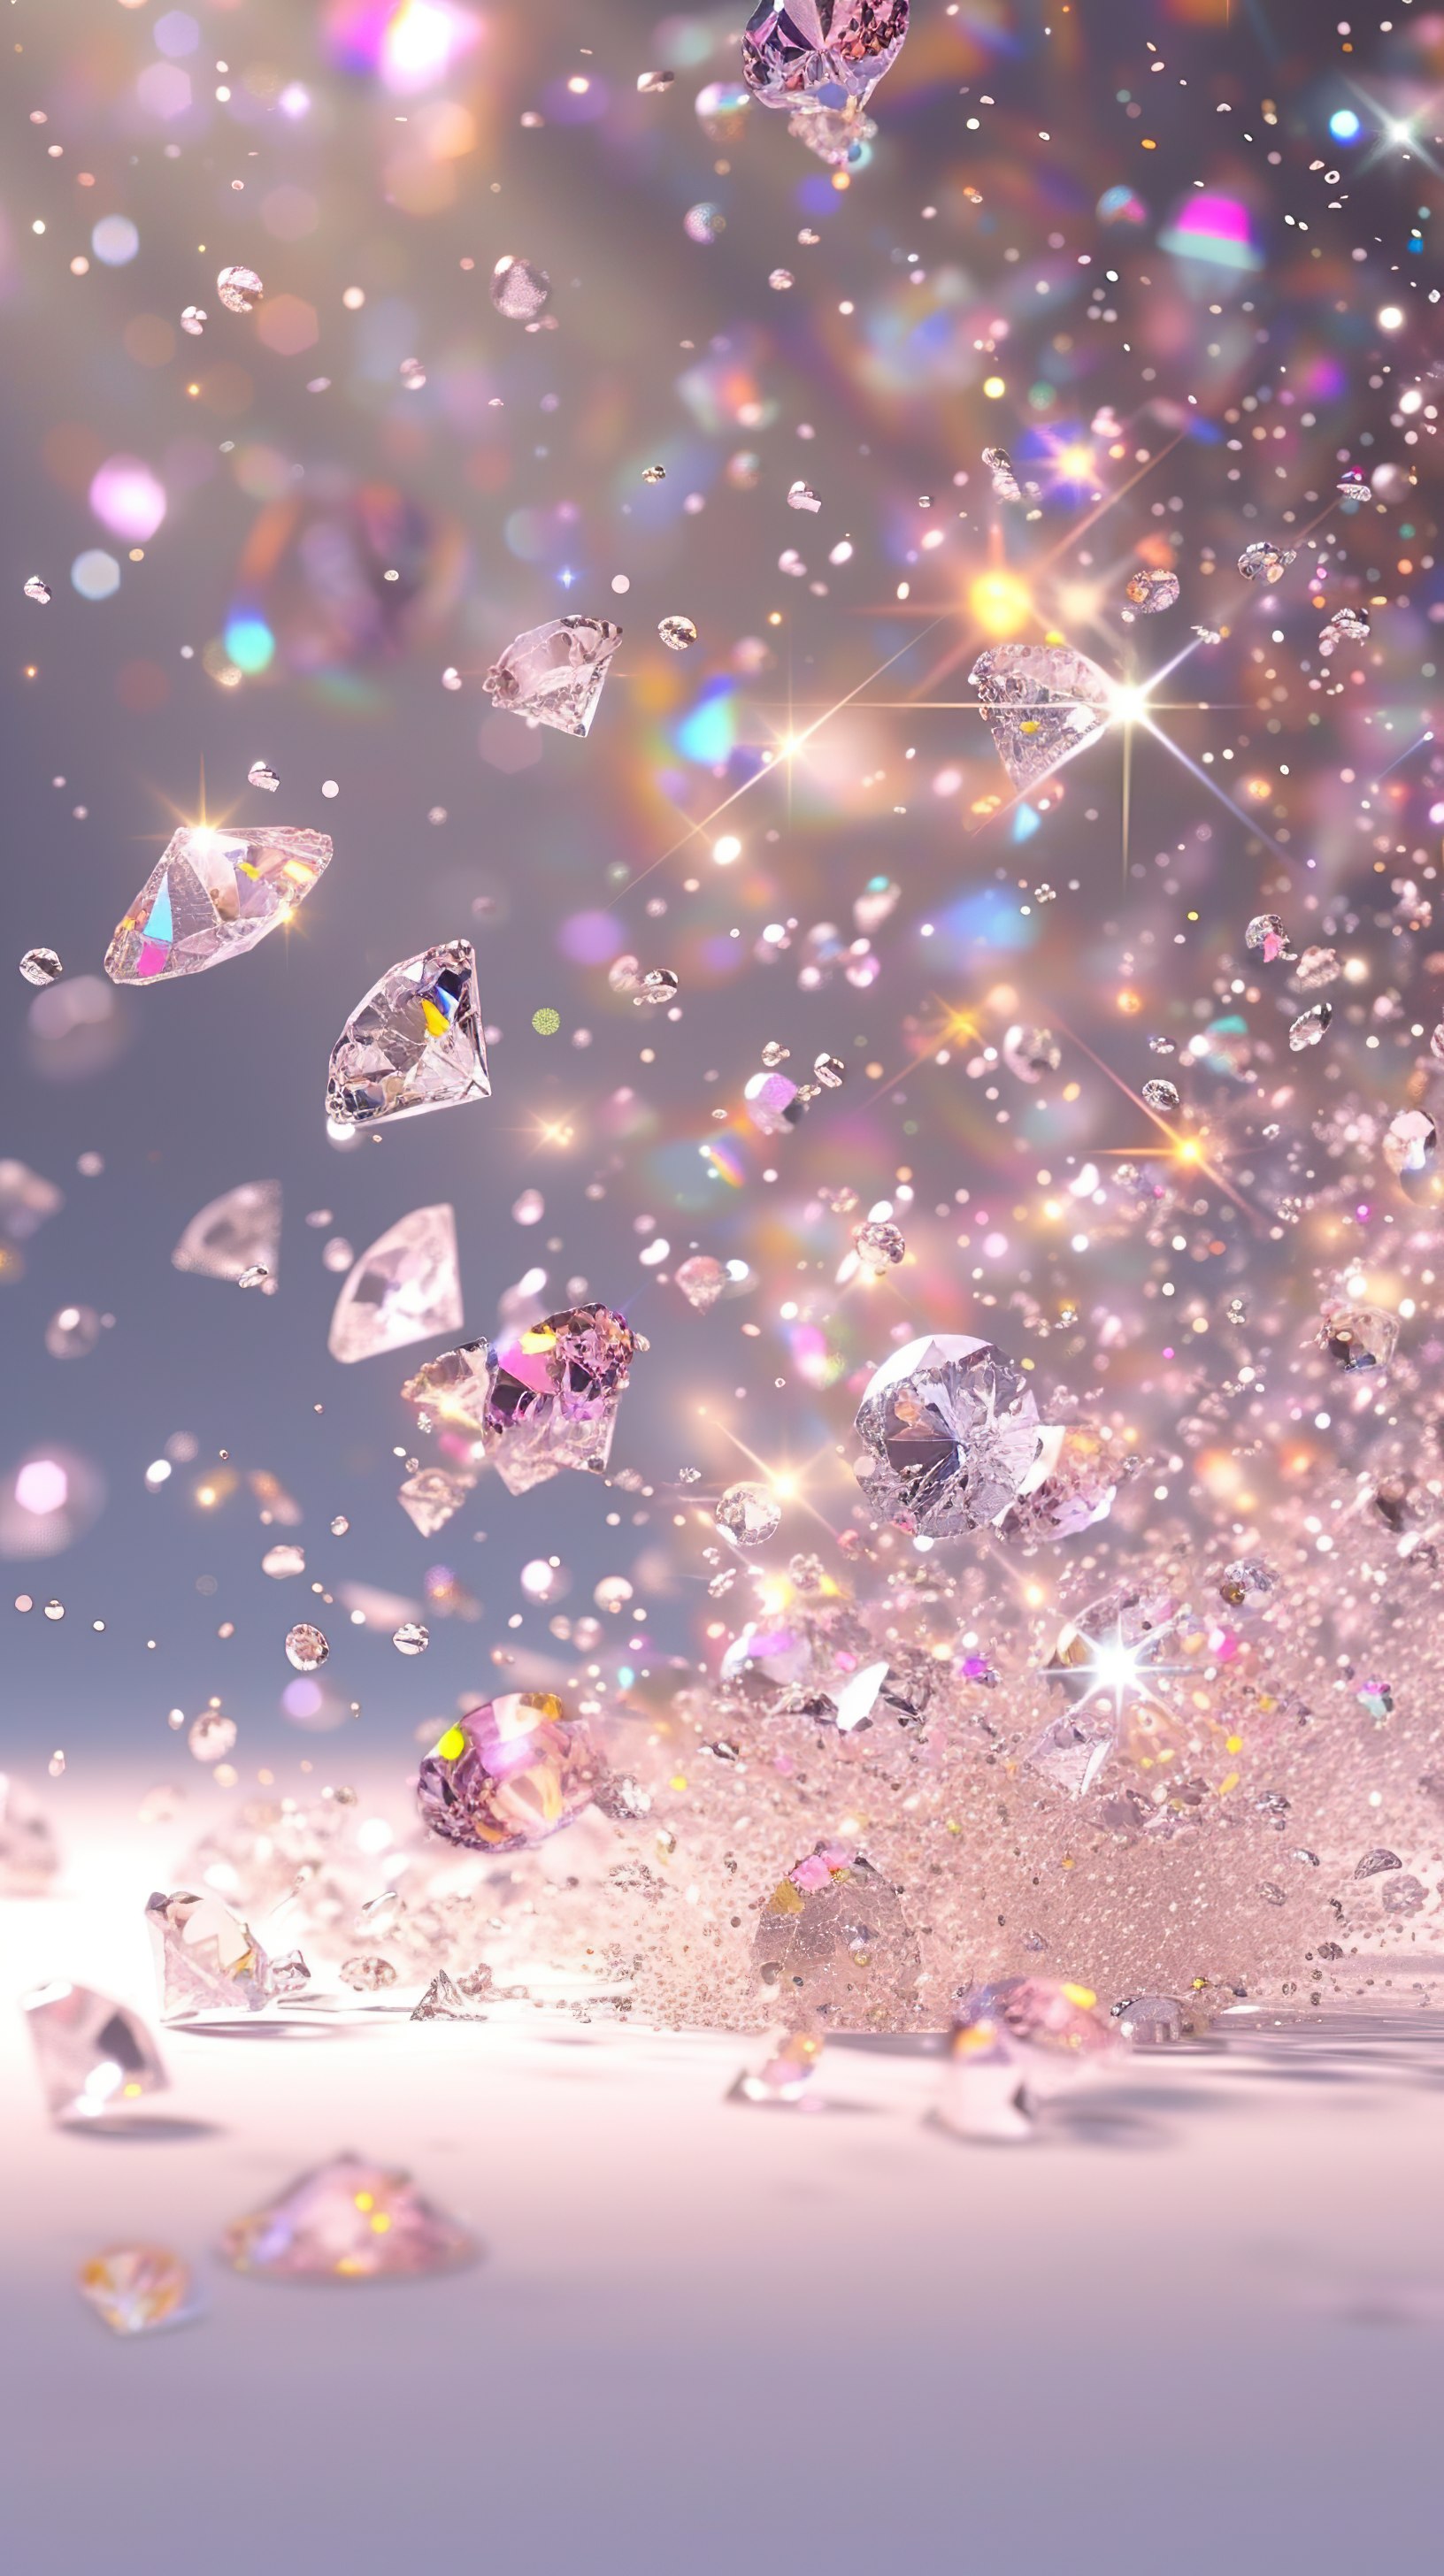 Shiny Diamonds falling on white surface background. 3D illustration